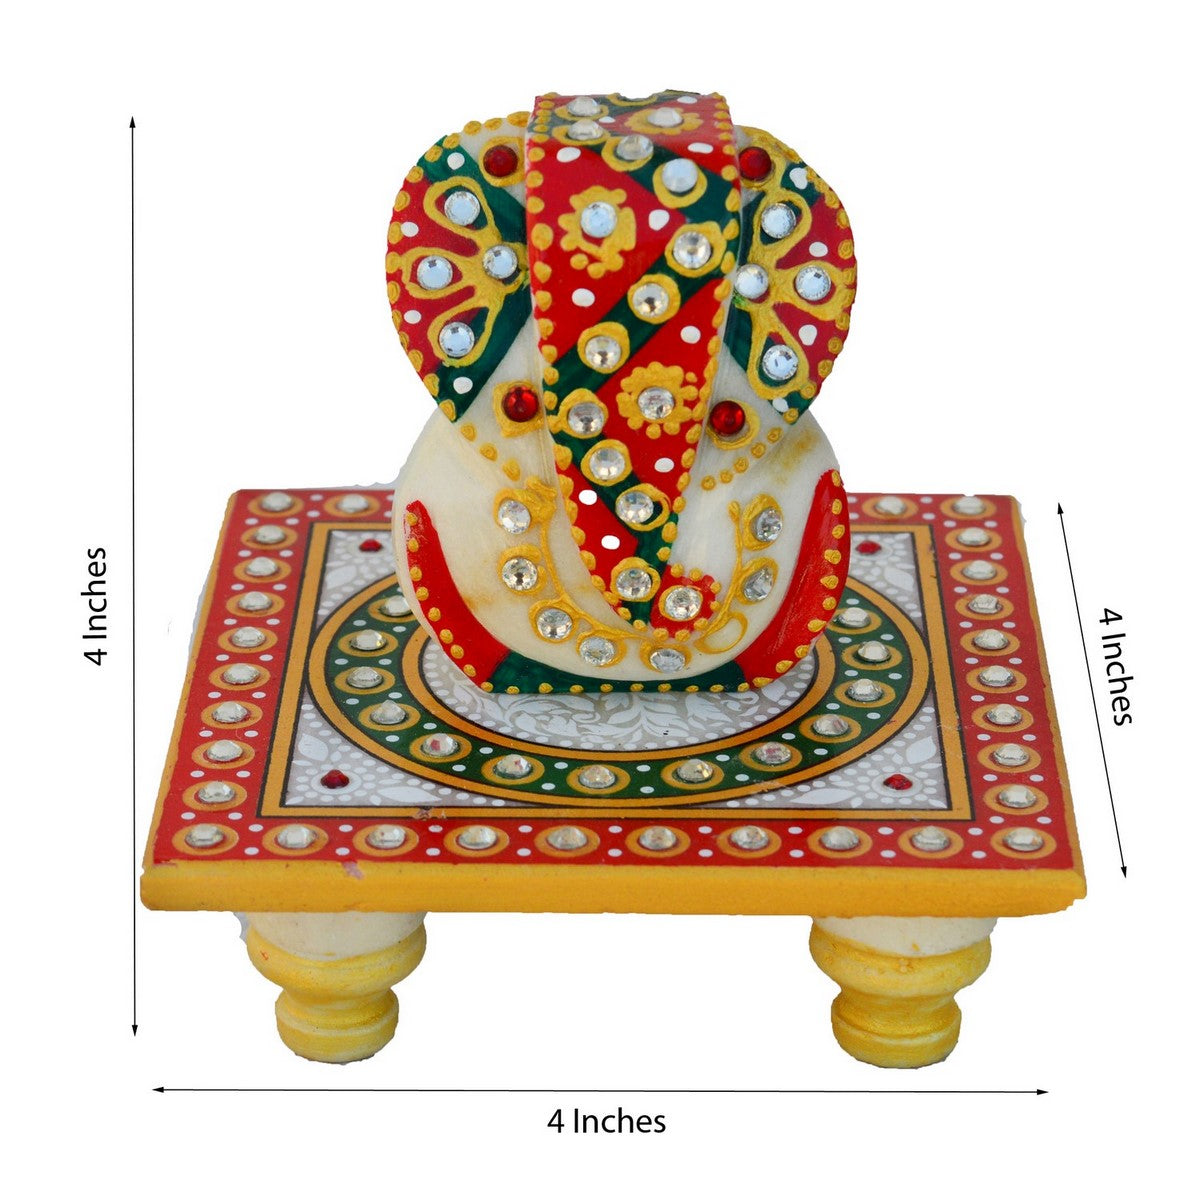 Designer Pubg Wala Bhai Rakhi with Lord Ganesha on Kundan Studded Marble Chowki and Roli Tikka Matki, Best Wishes Greeting Card 1